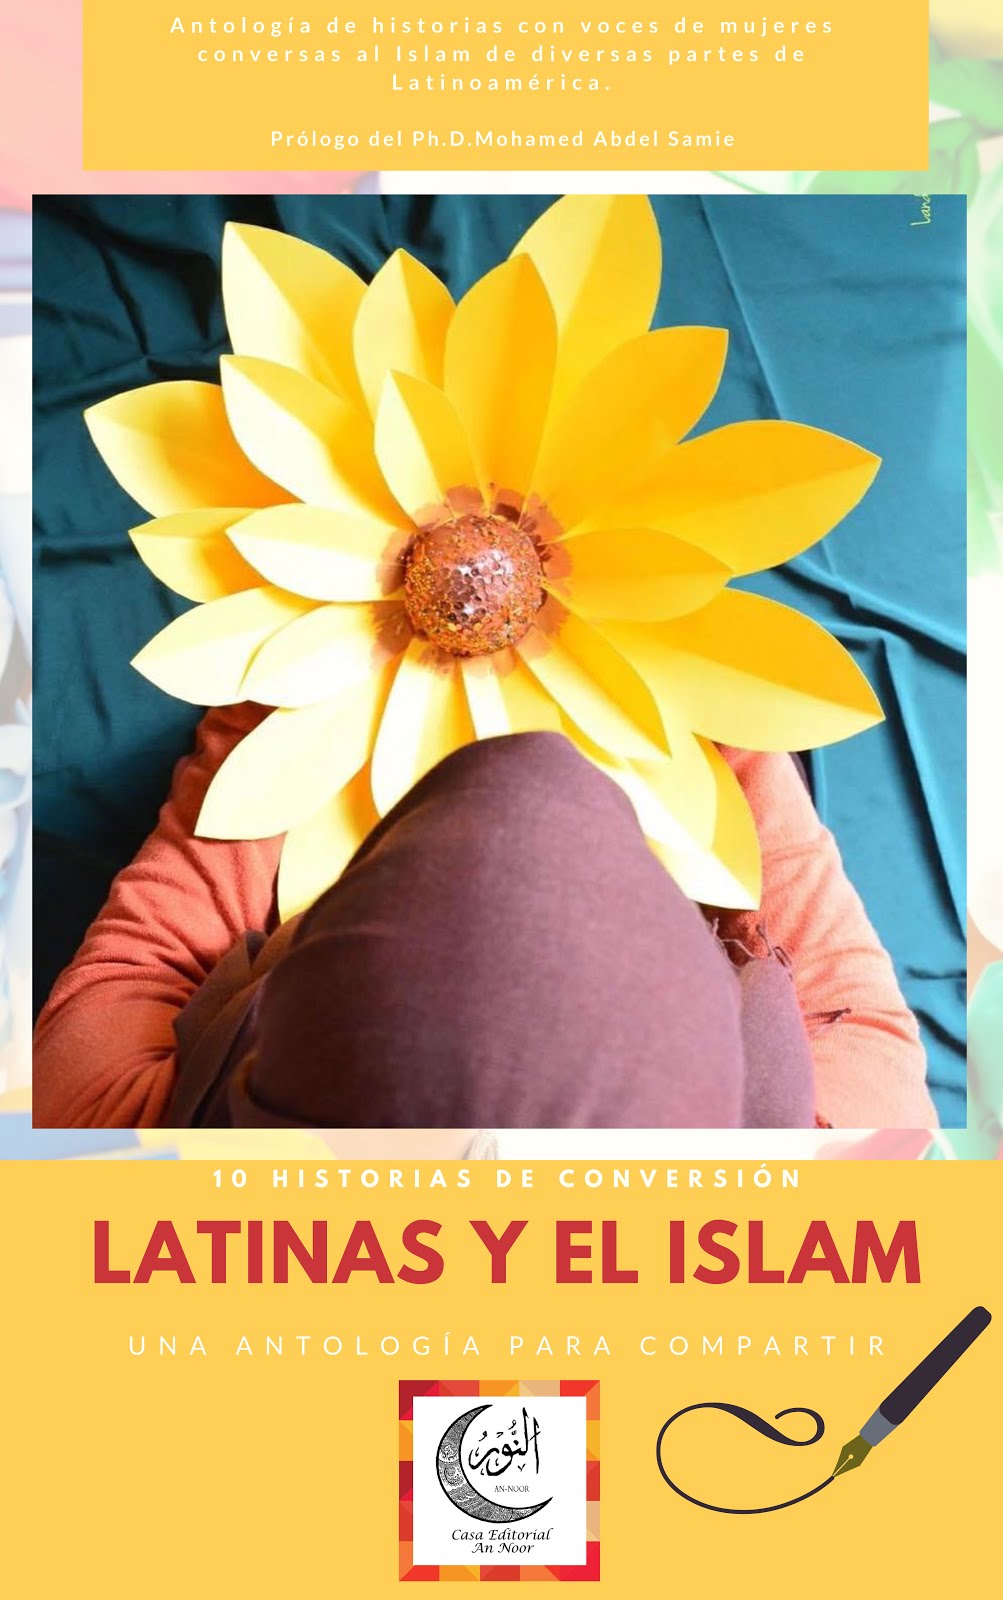 Libro Latinas y el Islam, en la imagen llena el formulario